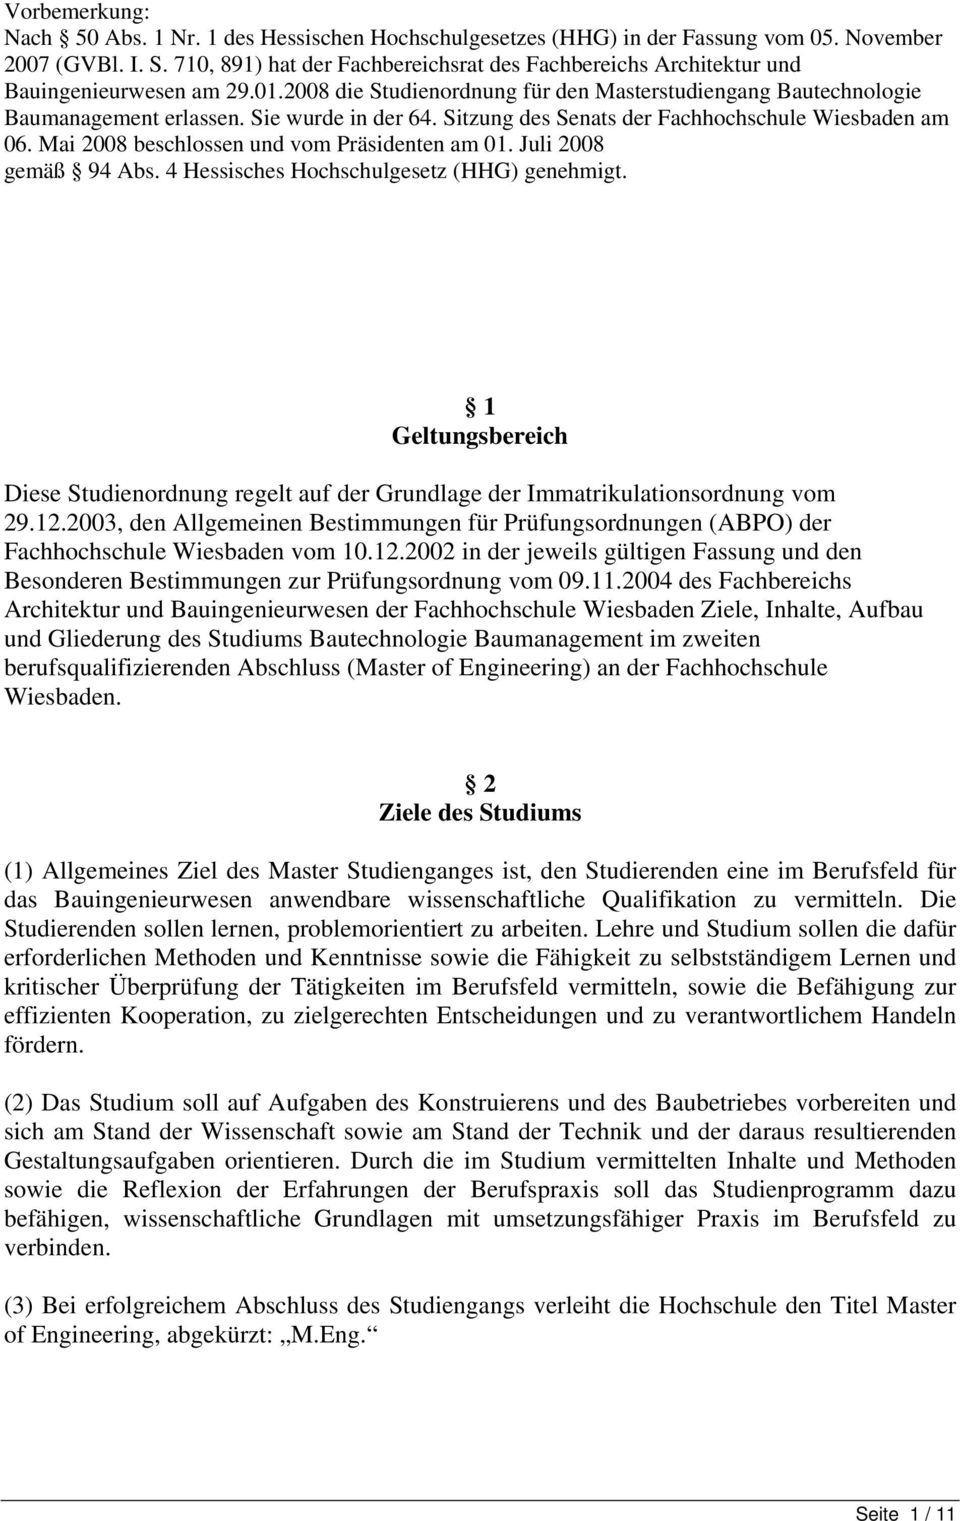 Sie wurde in der 64. Sitzung des Senats der Fachhochschule Wiesbaden am 06. Mai 2008 beschlossen und vom Präsidenten am 01. Juli 2008 gemäß 94 Abs. 4 Hessisches Hochschulgesetz (HHG) genehmigt.